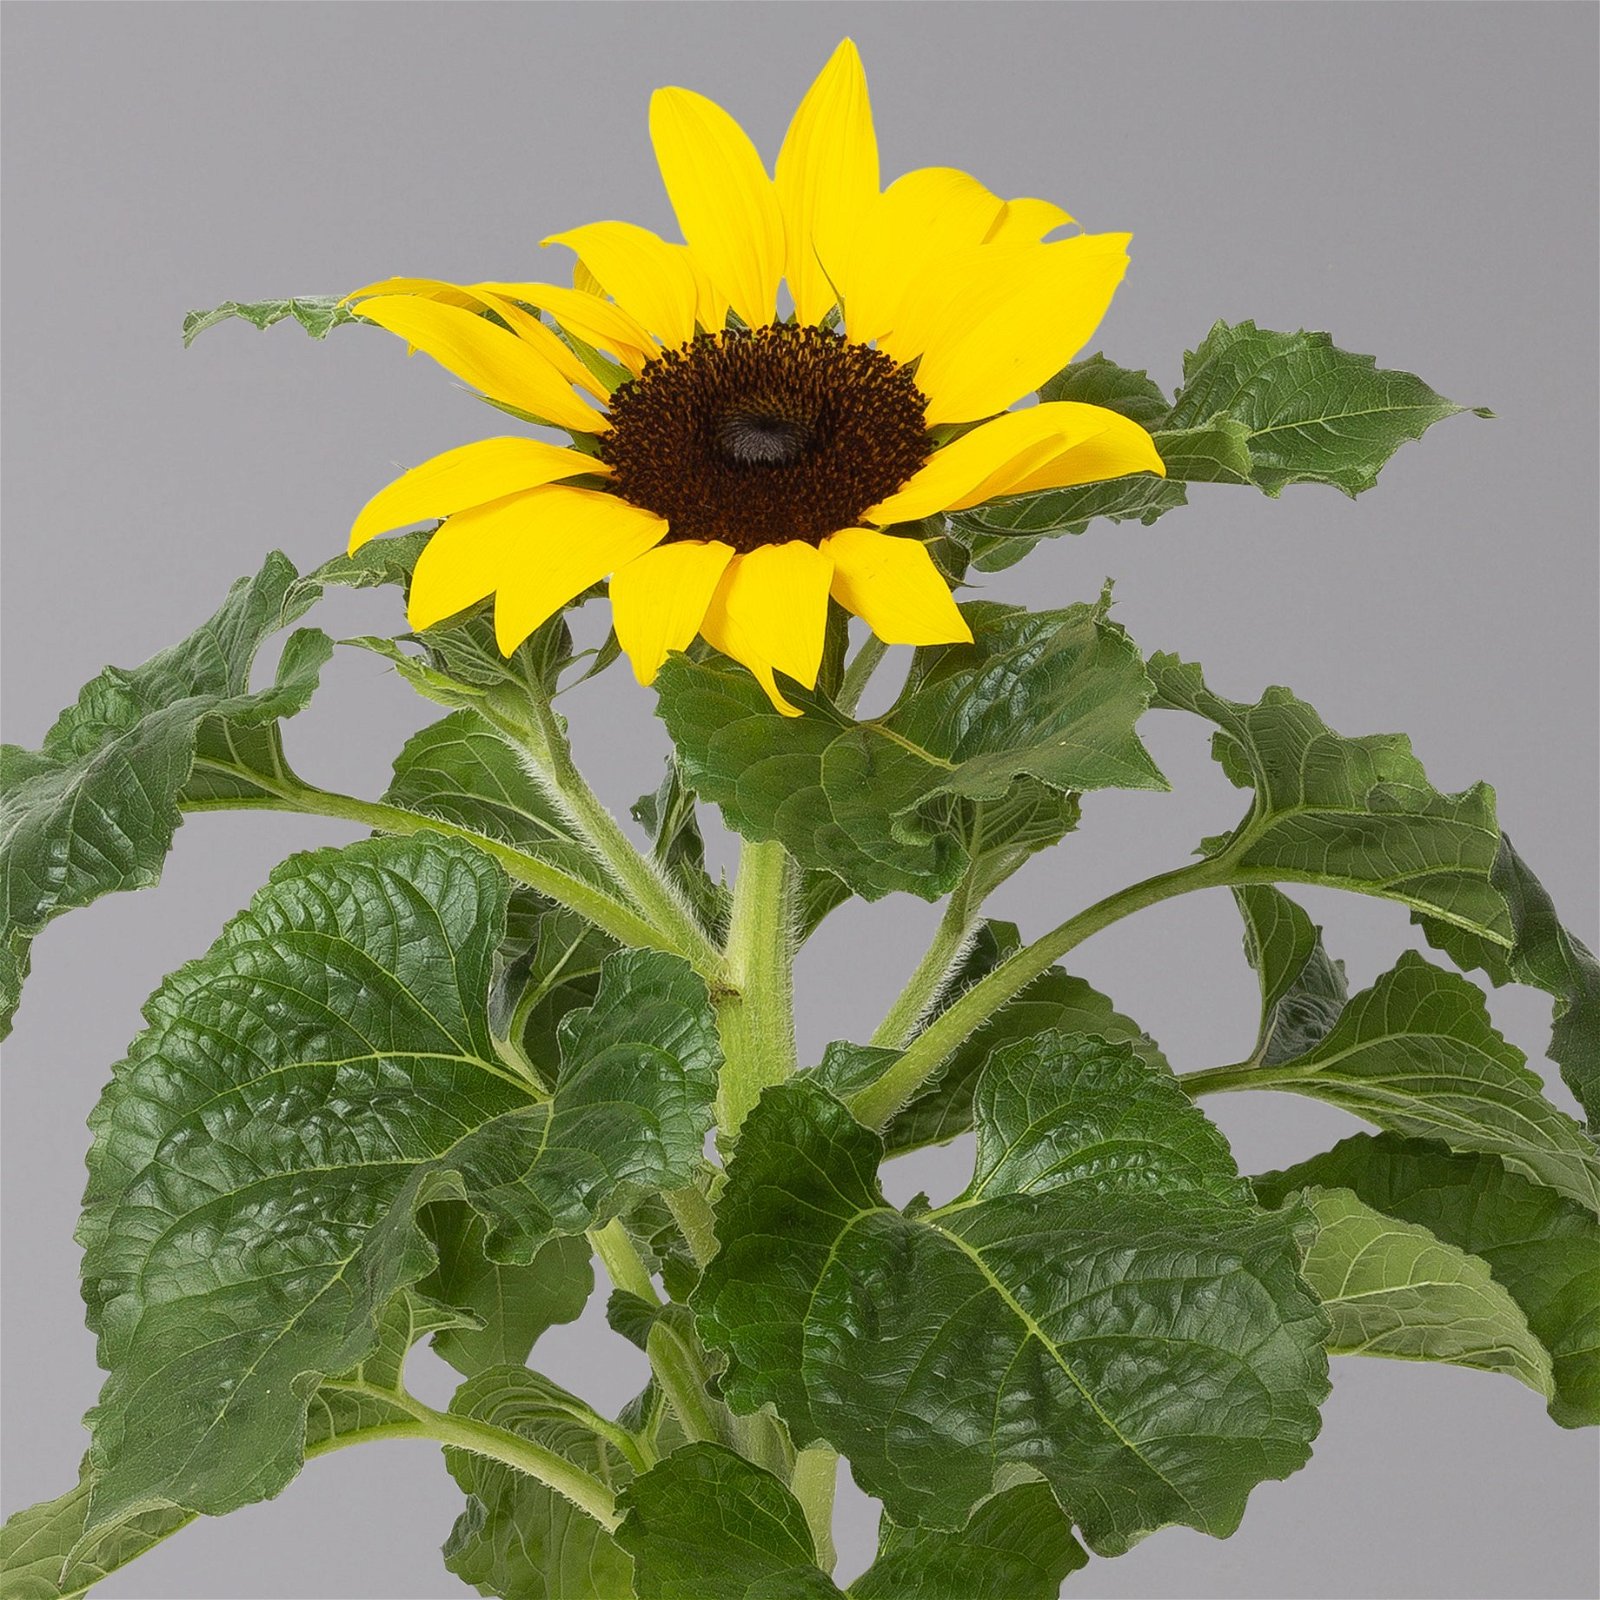 Sonnenblume 'Sunsation'® gelb, Topf-Ø 12/13 cm, 6er-Set